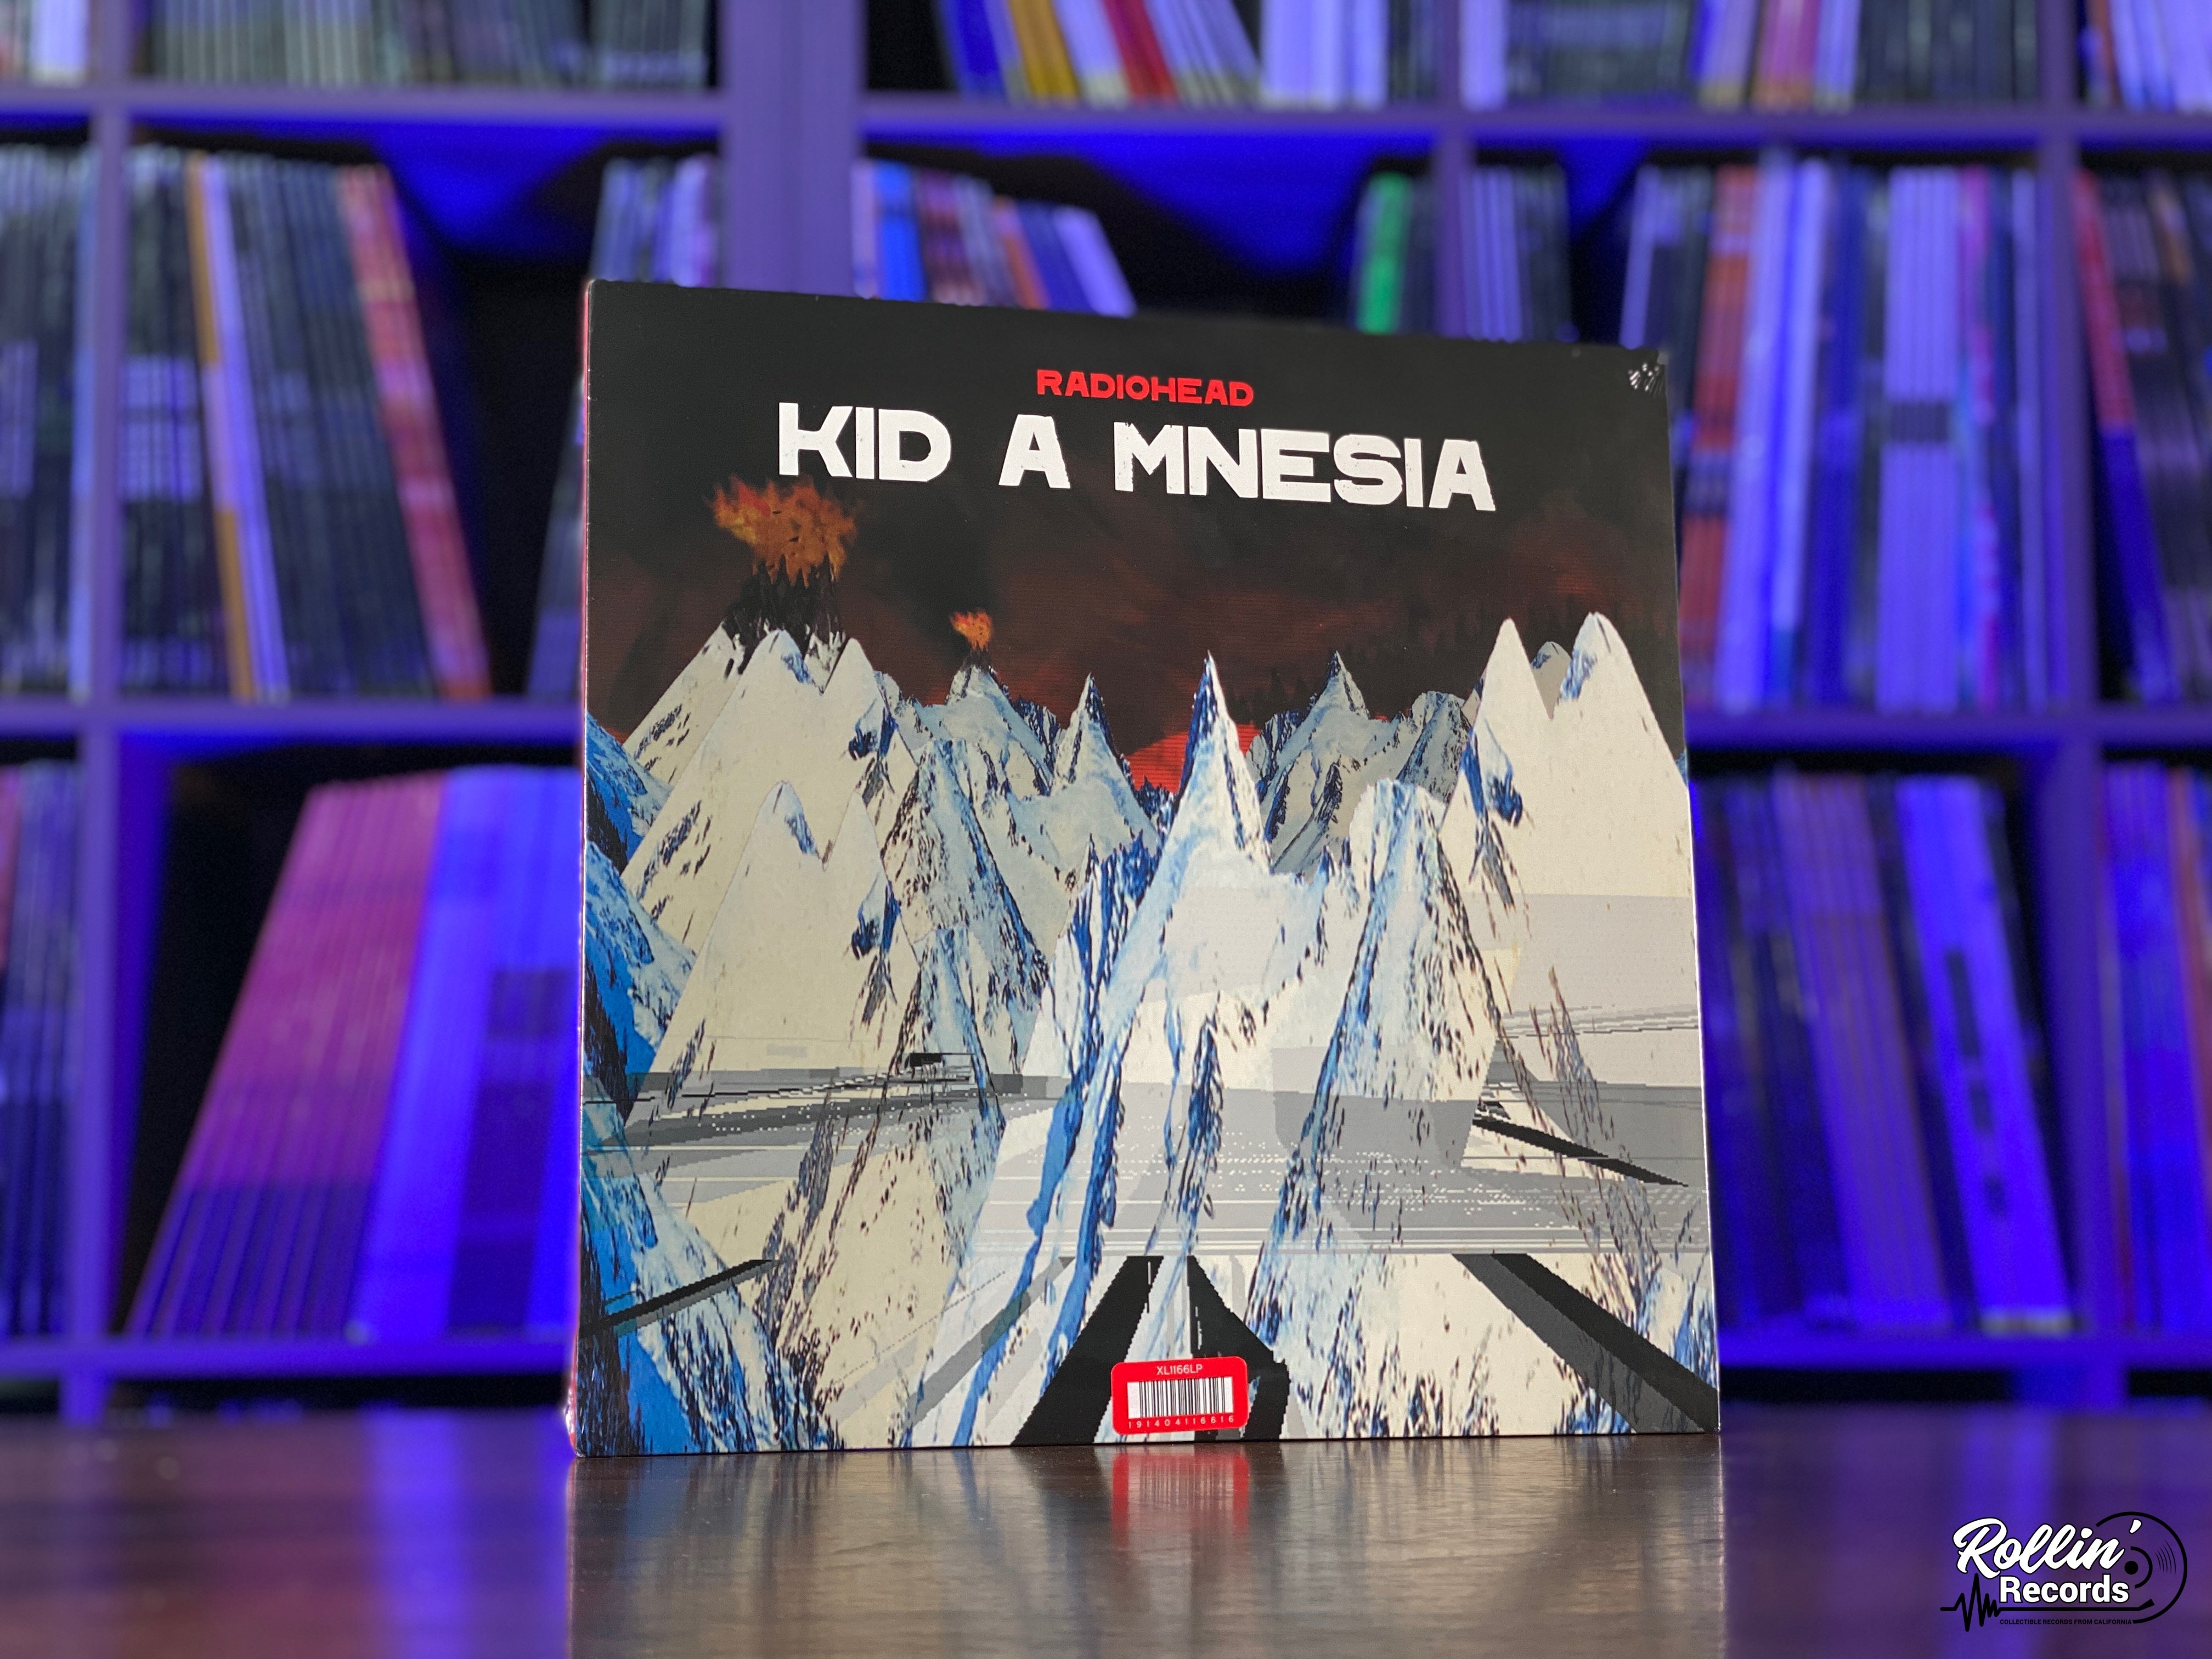 Radiohead - Kid A Mnesia – Rollin' Records